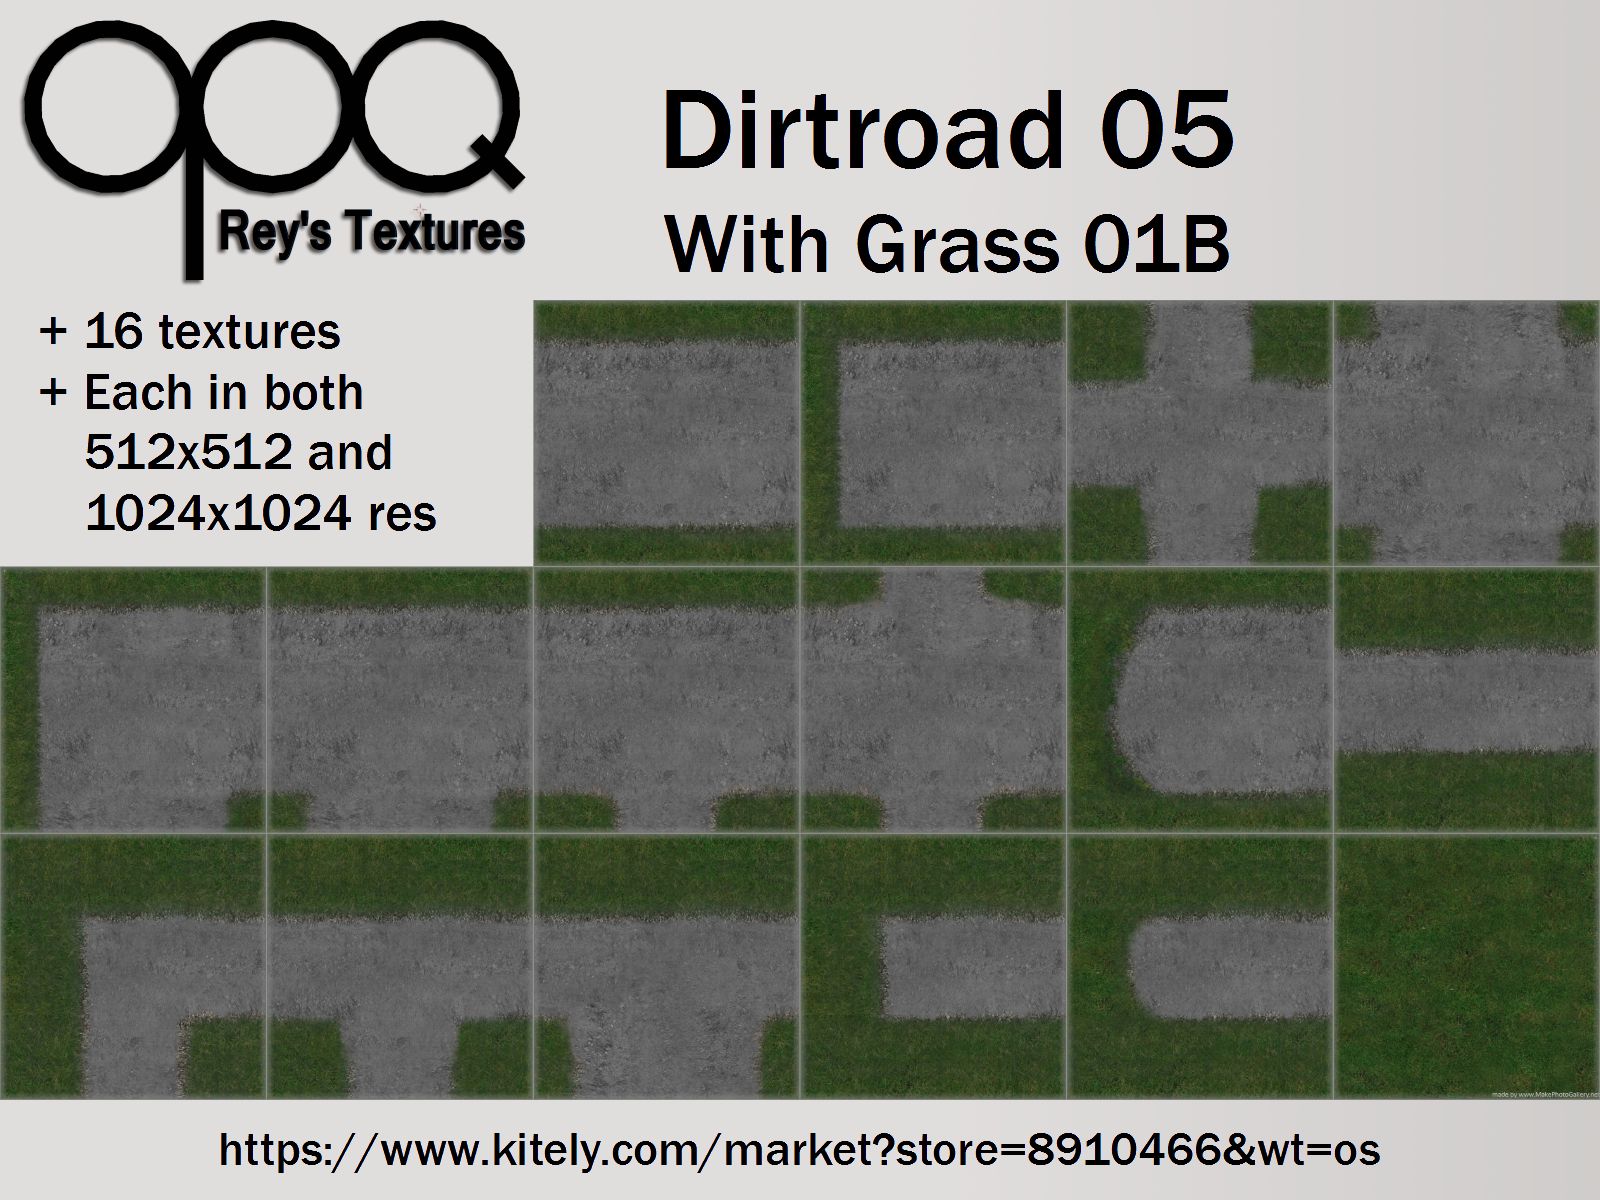 Rey's Dirtroad 05 Grass 01B Poster Kitely.jpg